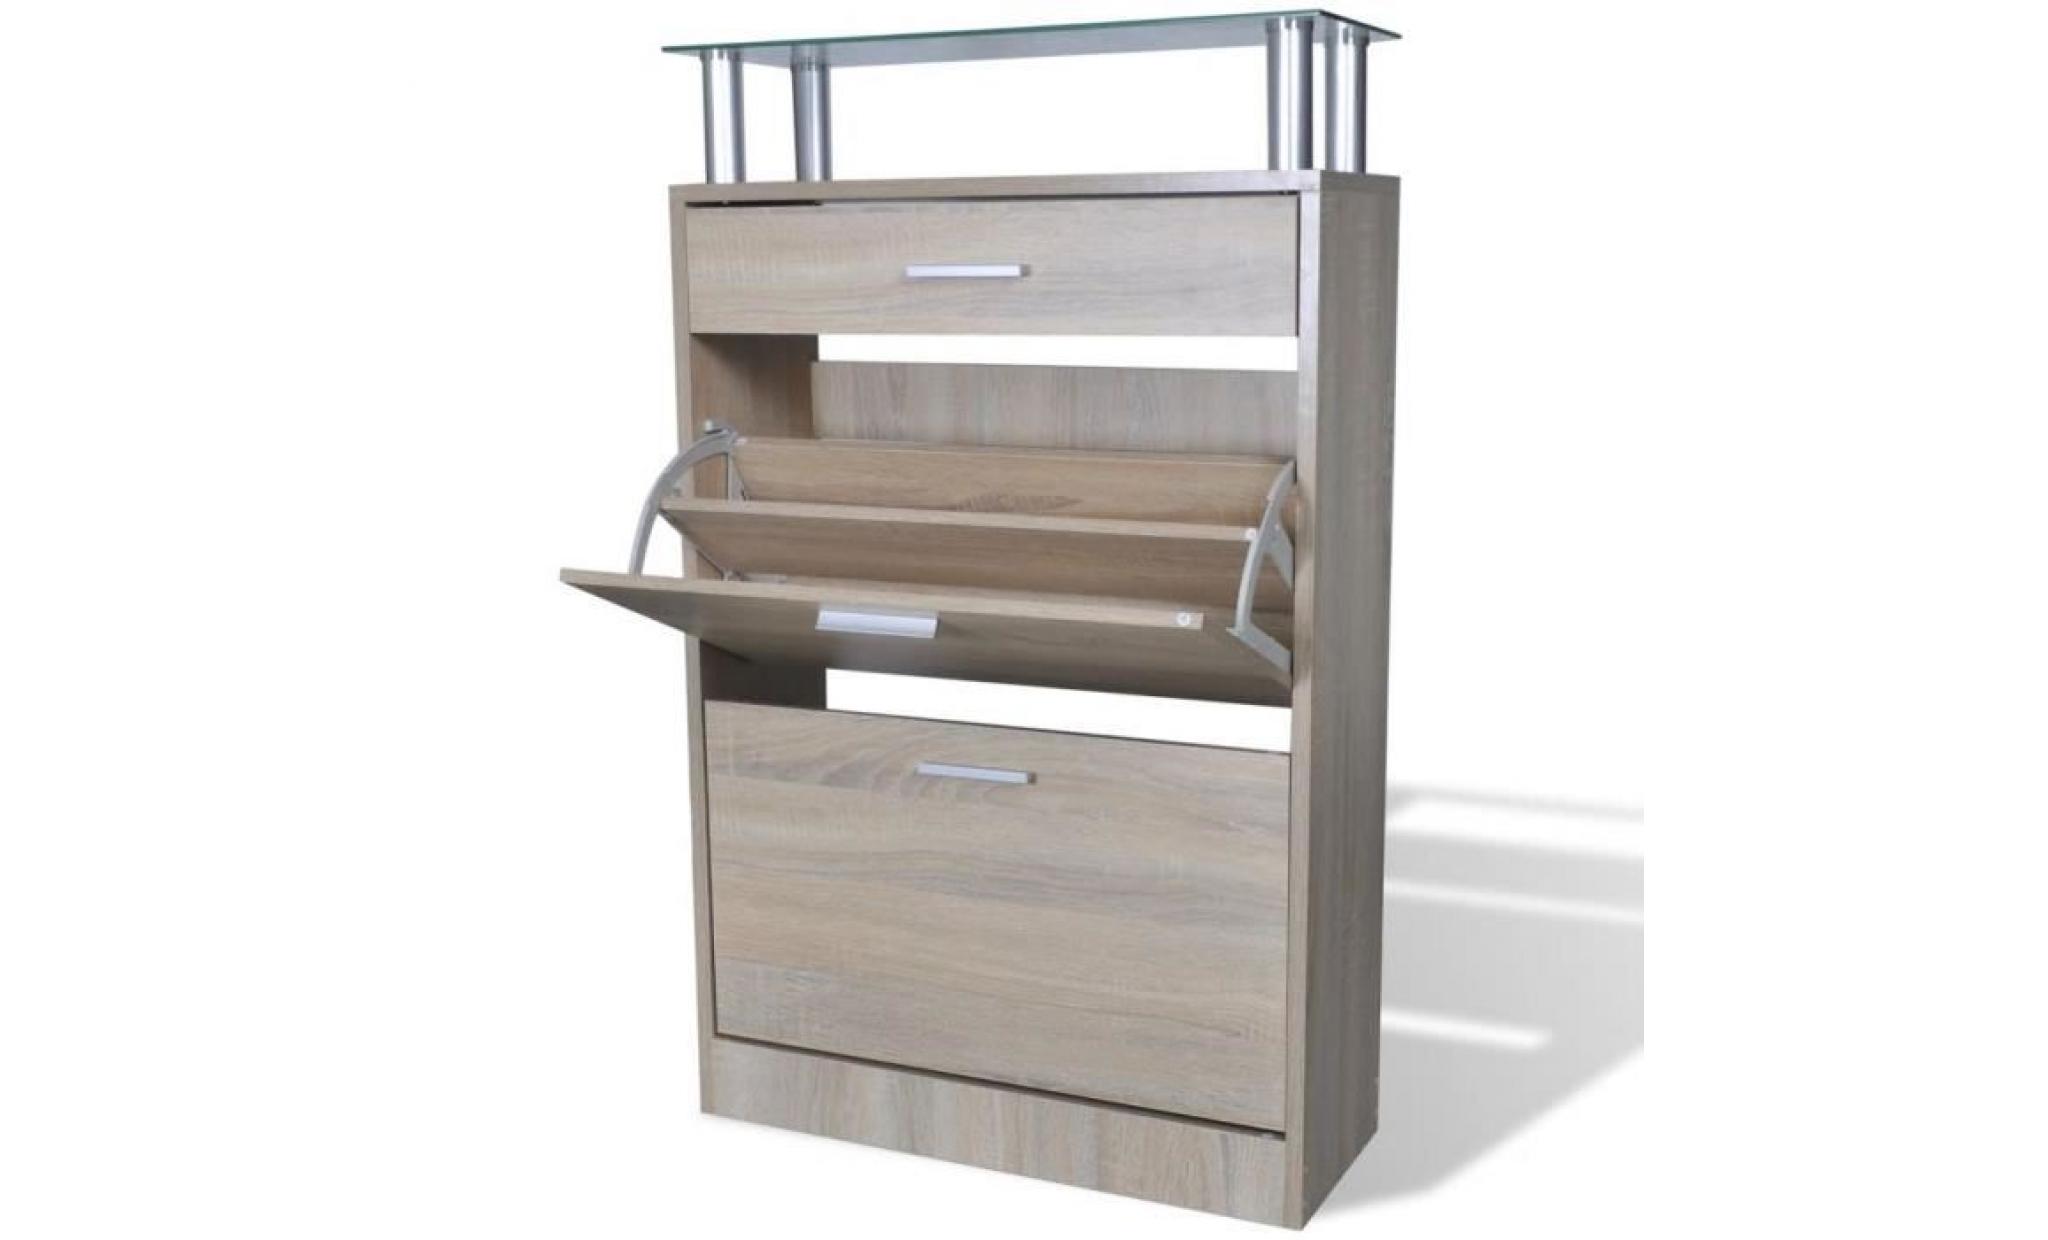 meuble à chaussures porte chaussuressupport rangement stockage meuble range en bois avec 2 compartiments aspect chêne